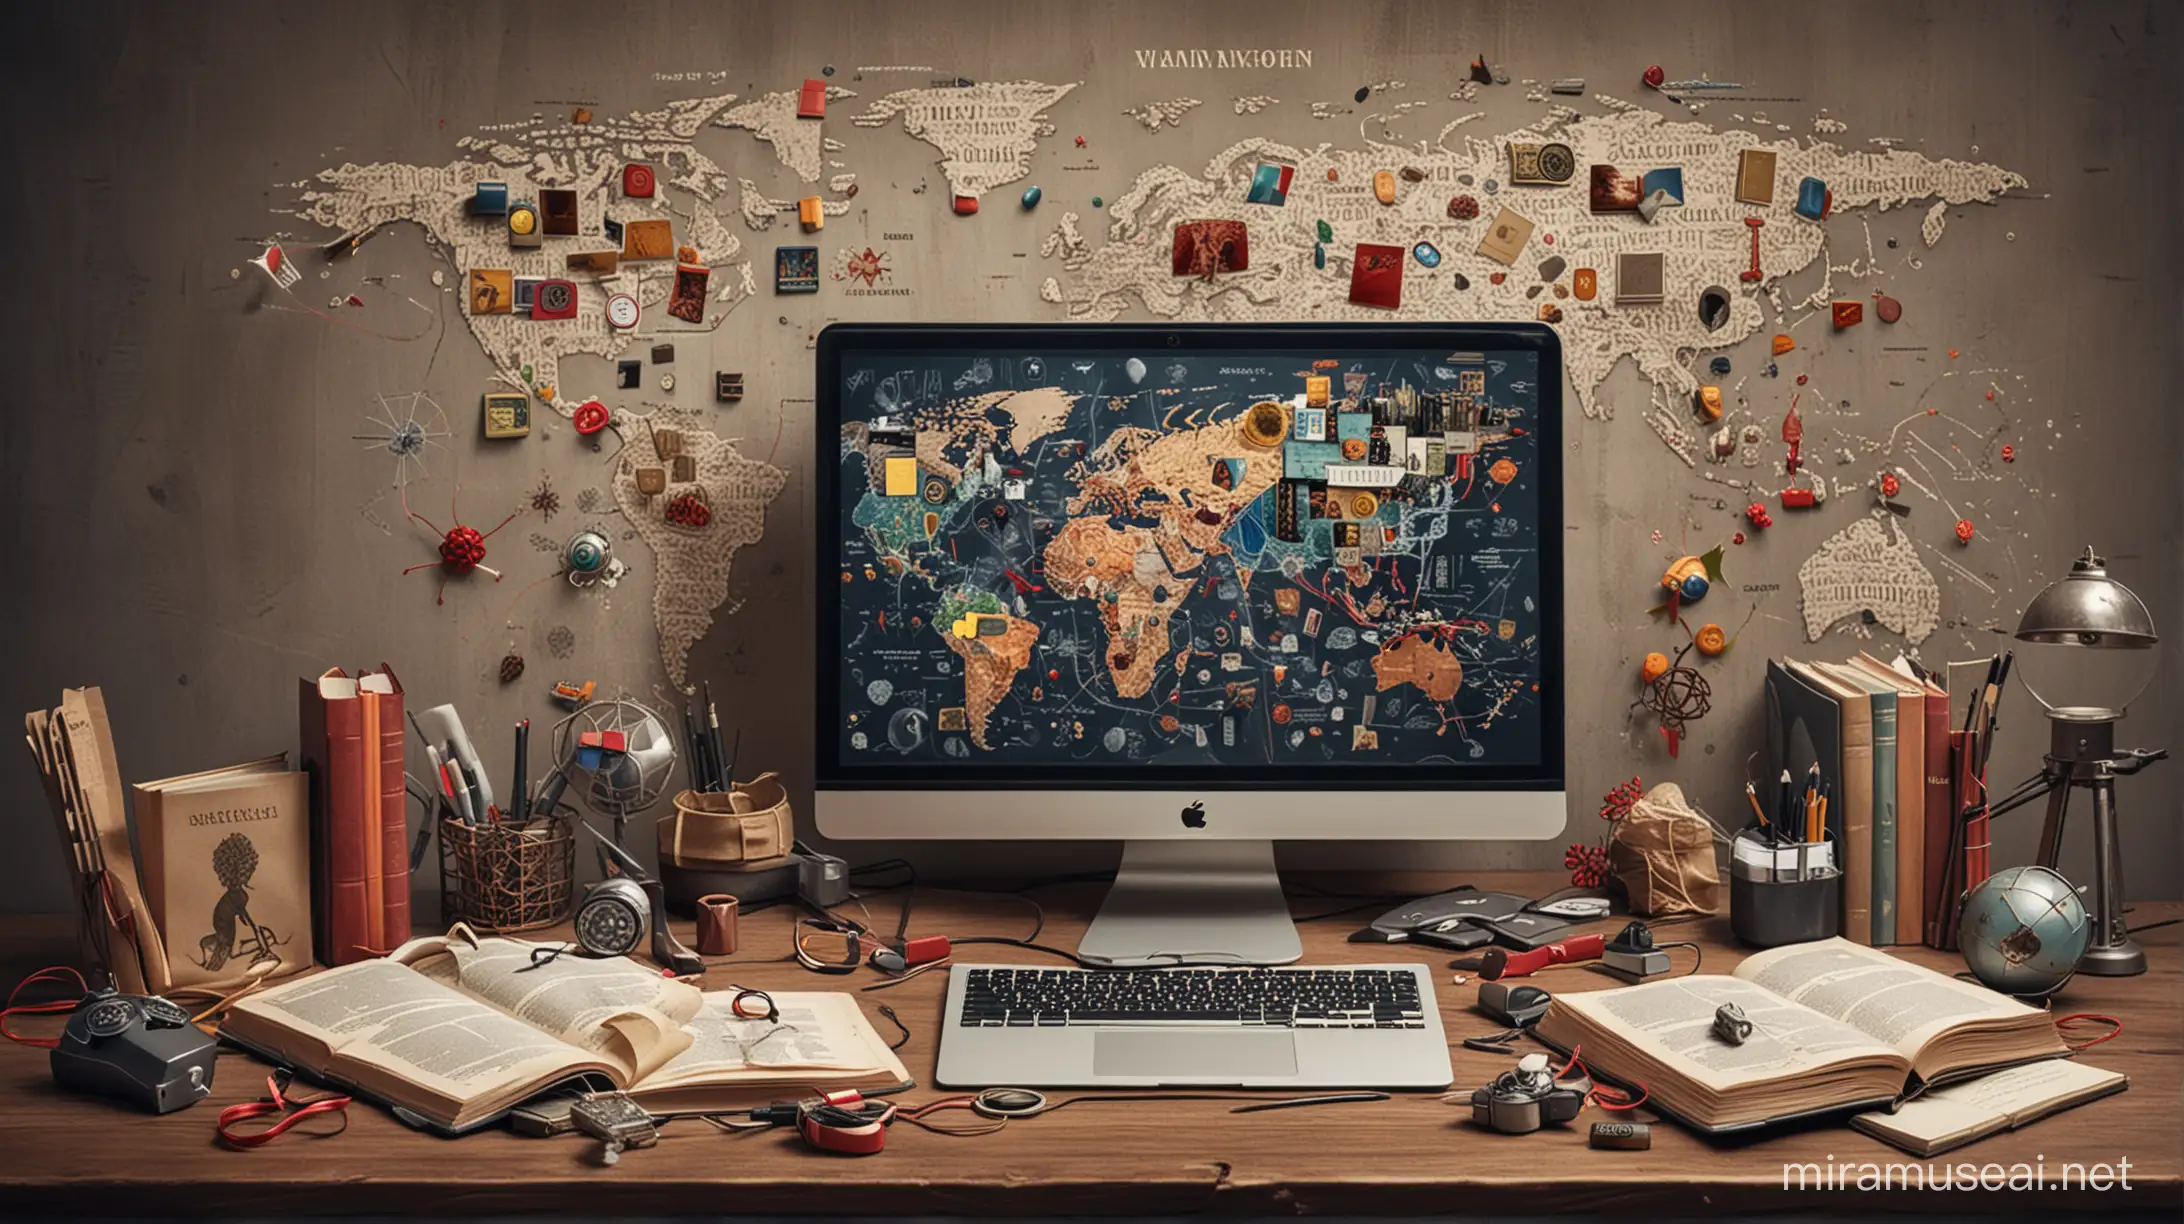 تصویر از مغز انسان همراه با کتاب‌ها و ویرویس‌ها و اسلحه‌ها و نقشه جهان، و رباط‌ها و انواع دستگاهای دیگر مانند کمپیوتر و یک انسان نقابدار